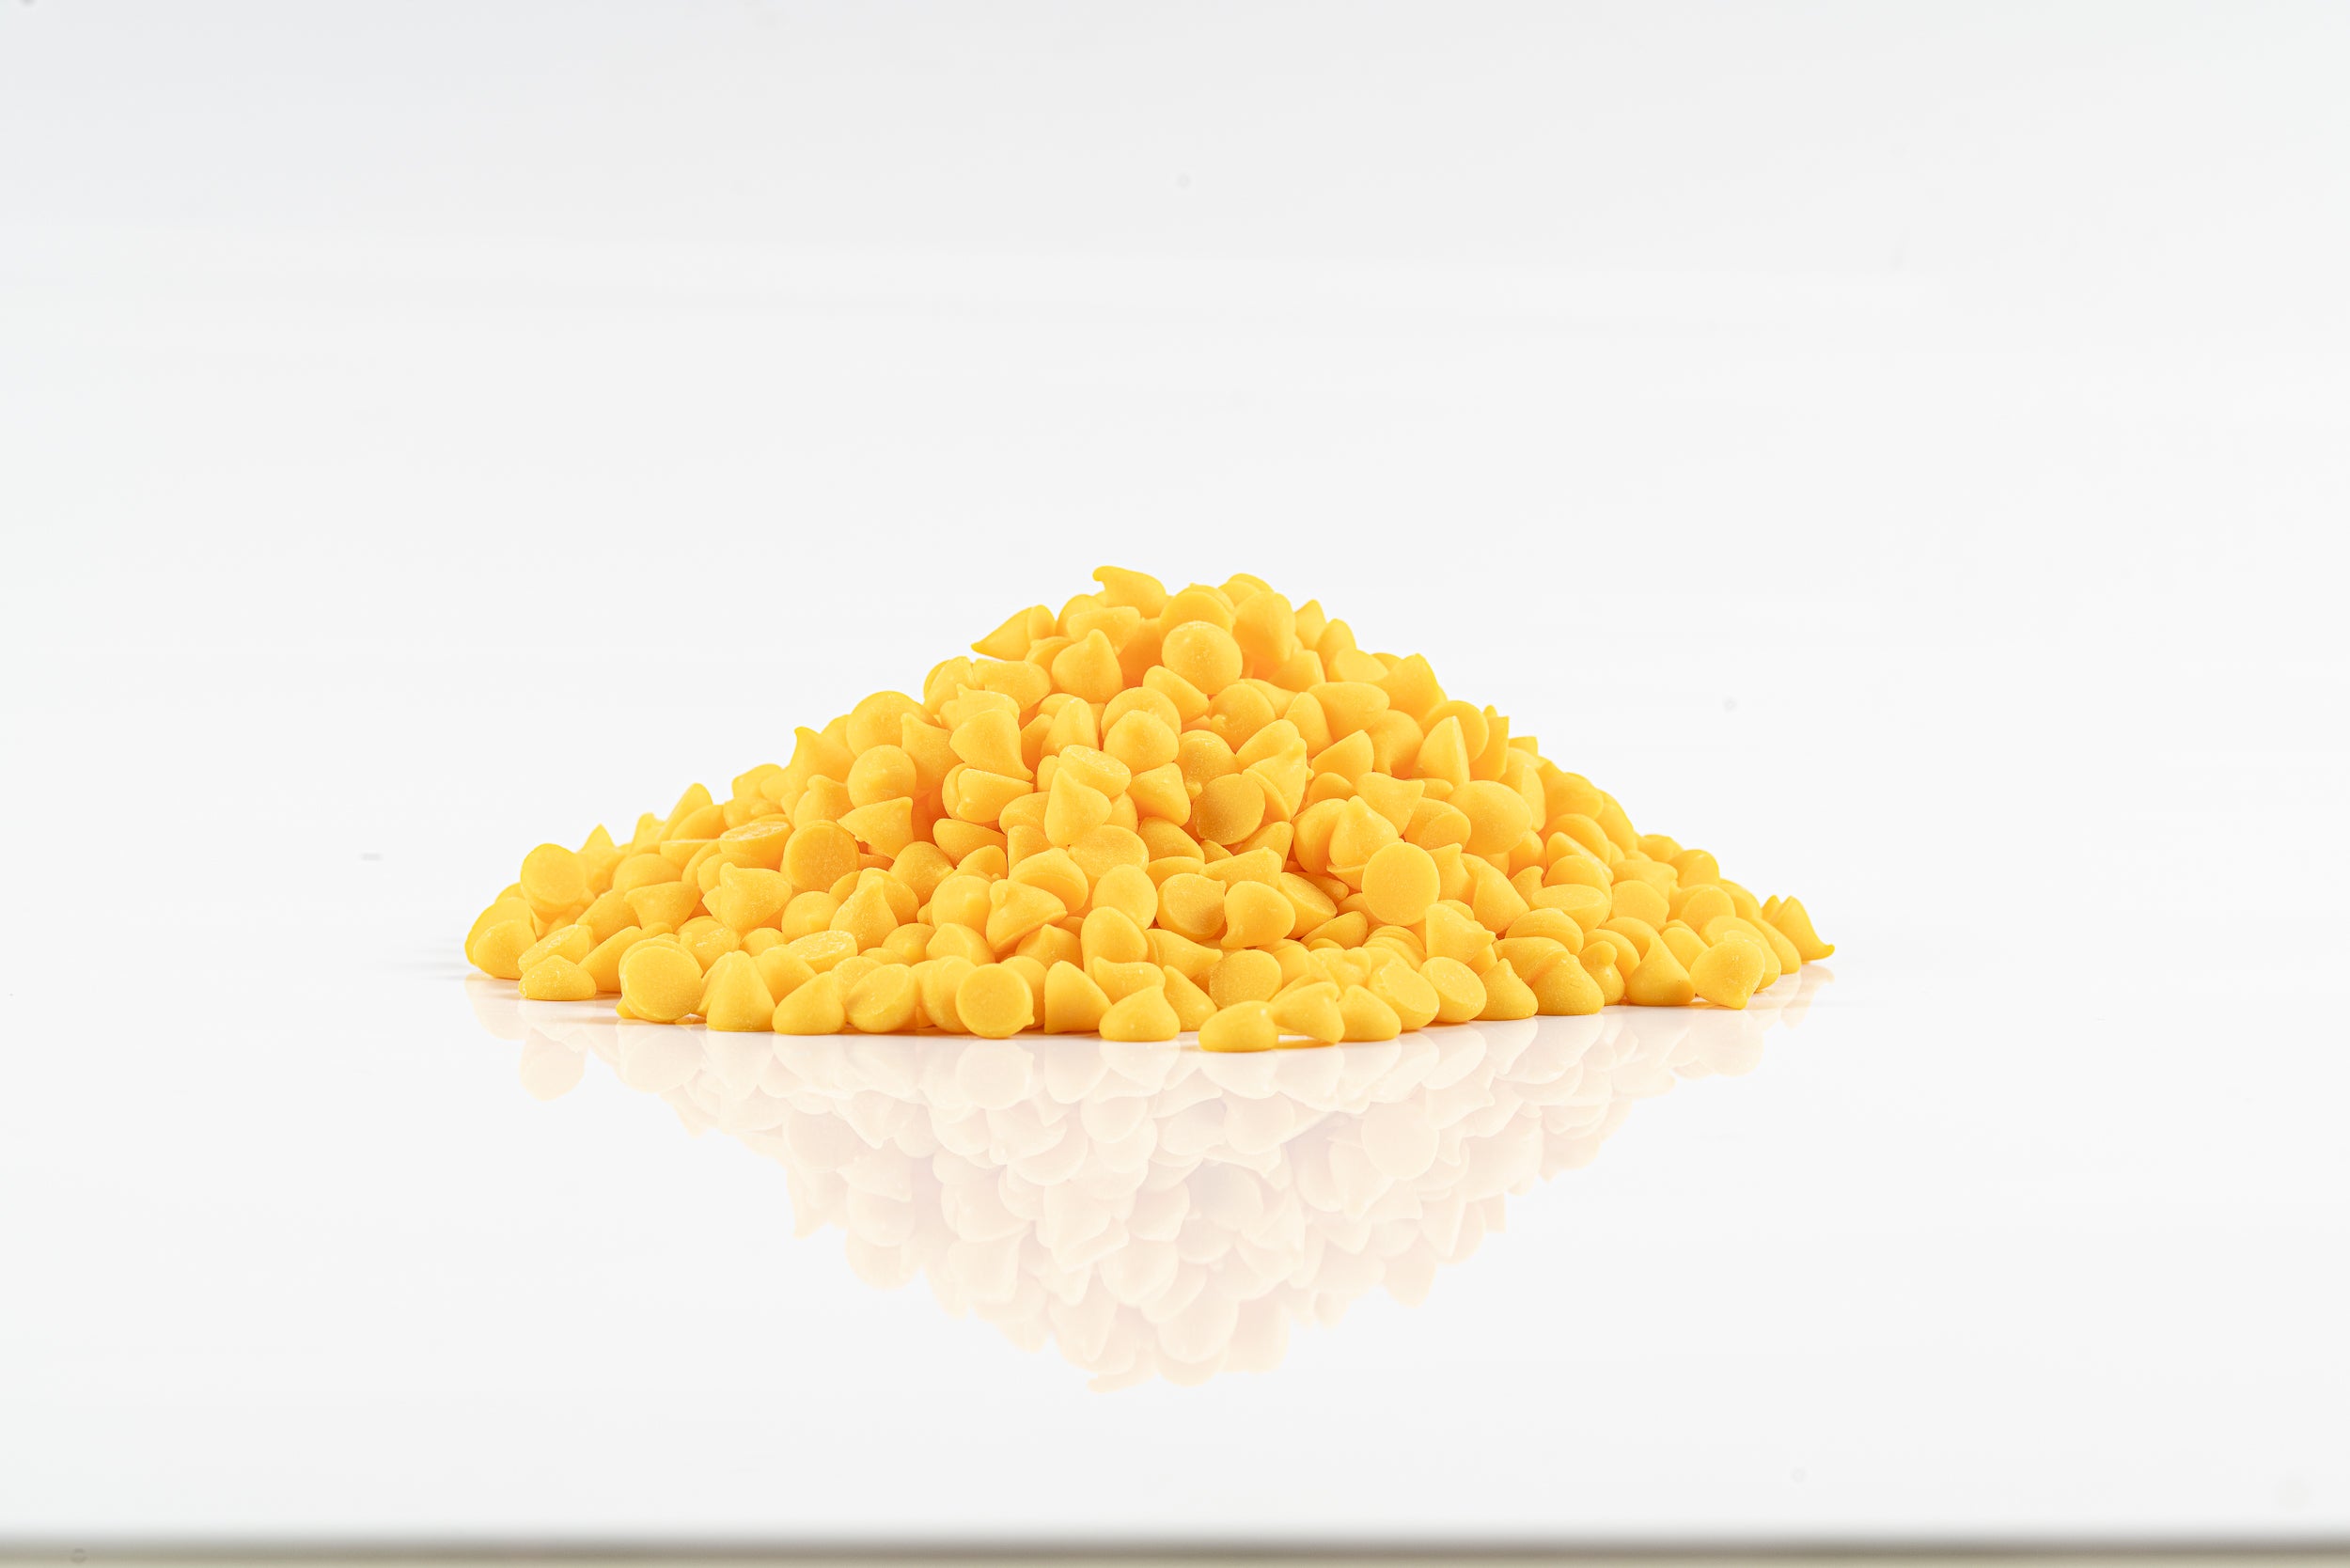 Chips Alpezzi Amarillo Bolsa 500 g